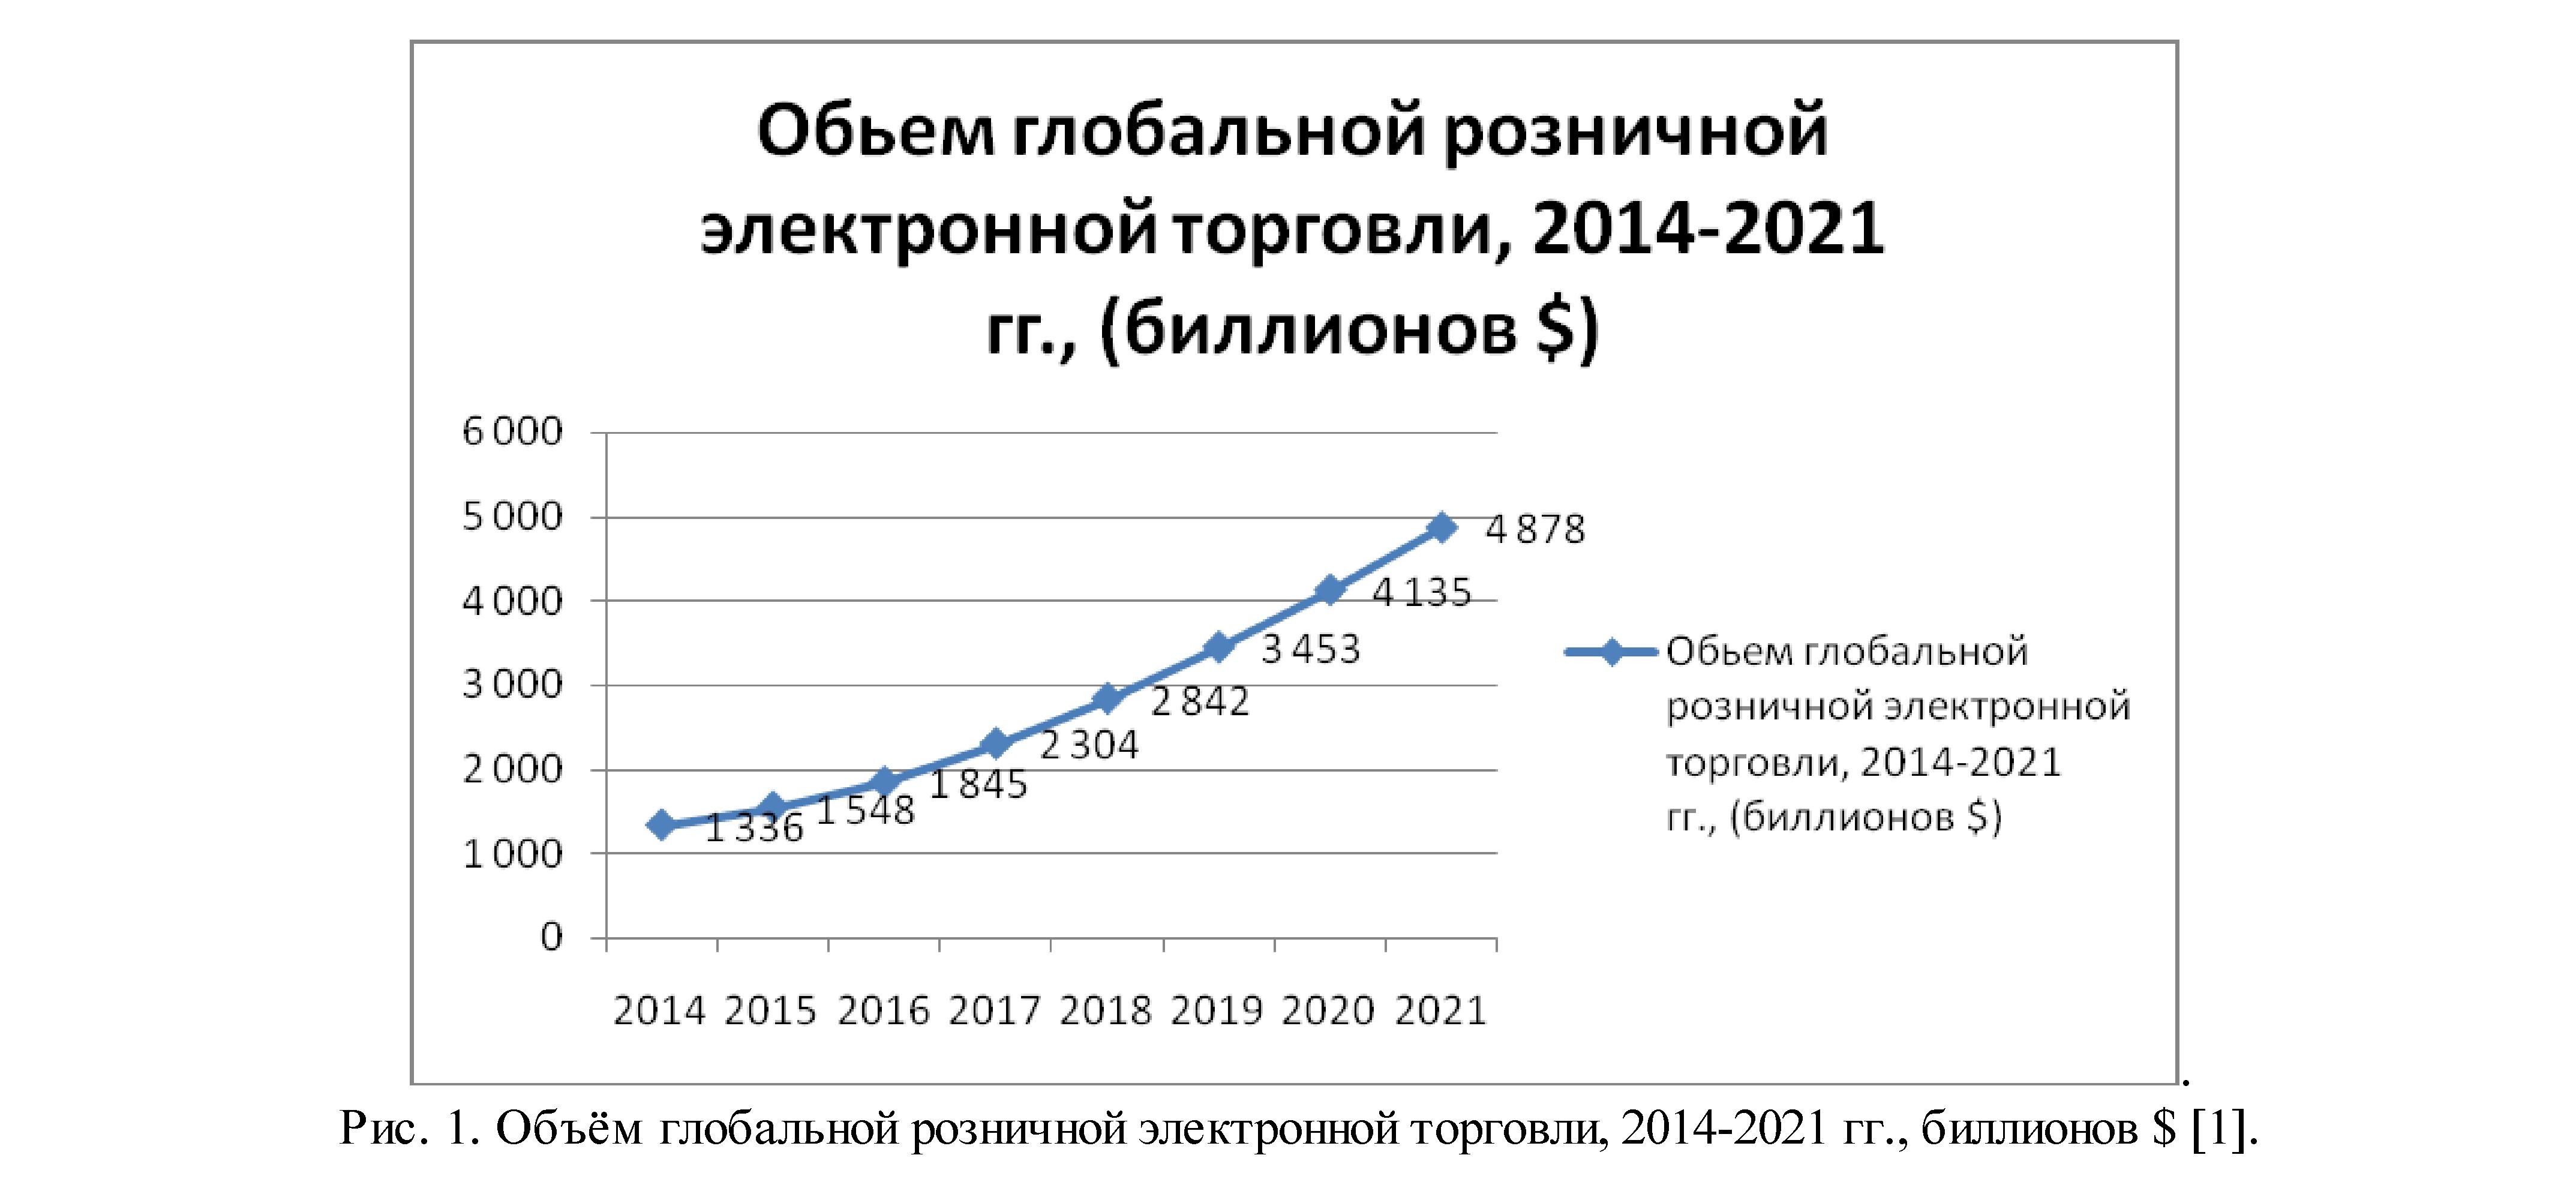 Развитие электронной коммерции в Украине